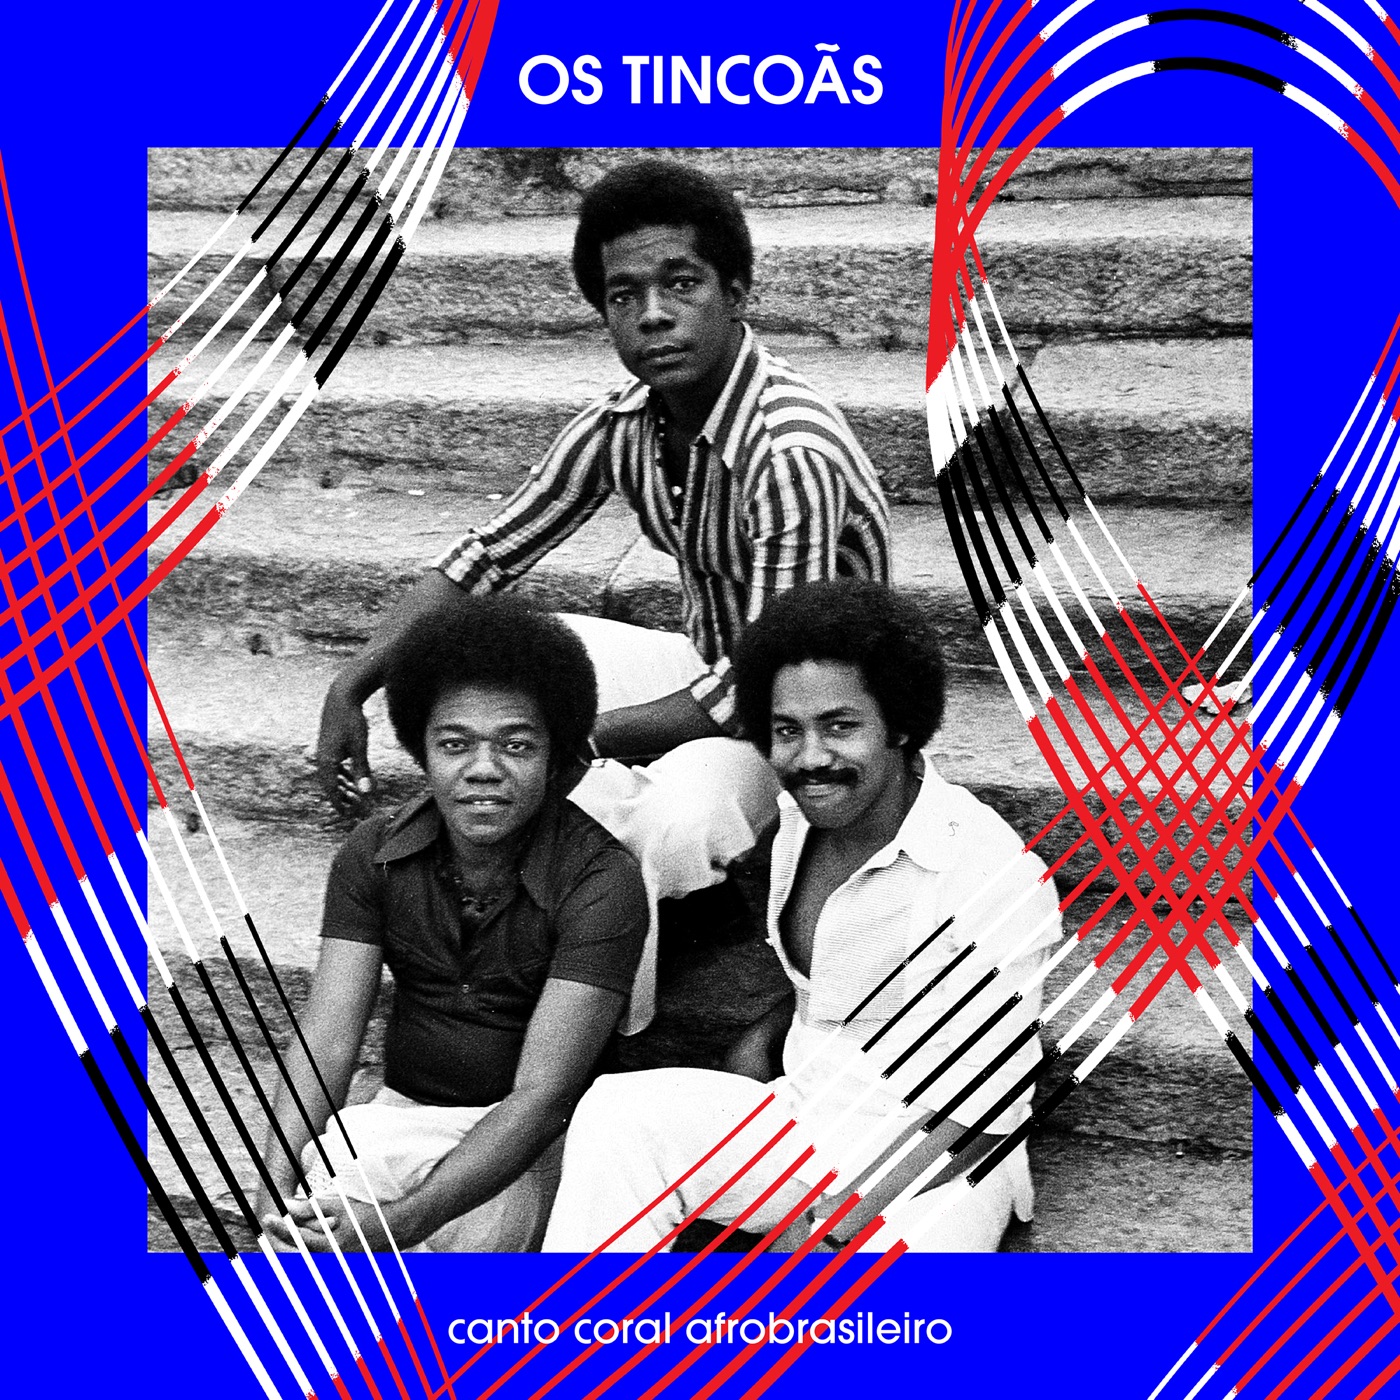 Canto Coral Afrobrasileiro by Os Tincoãs